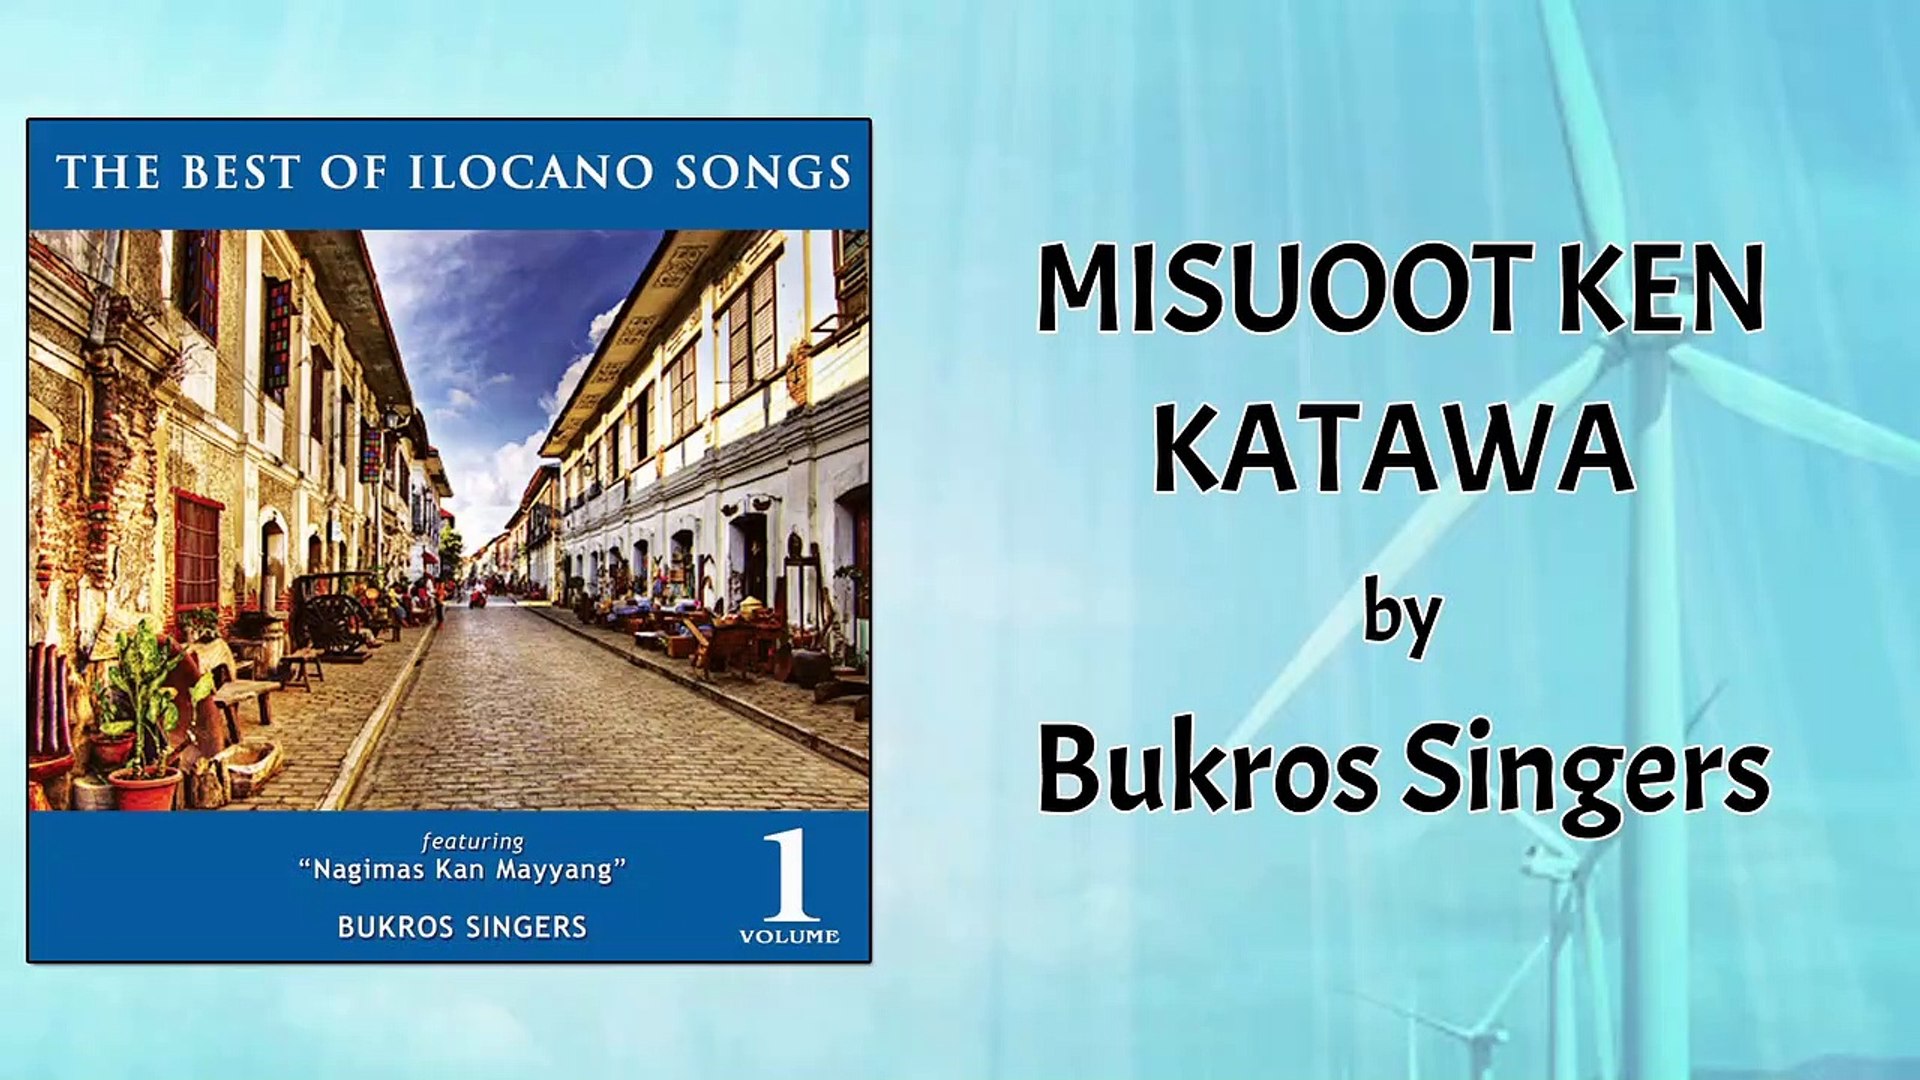 Bukros Singers - Misuoot Ken Katawa (Lyrics Video)